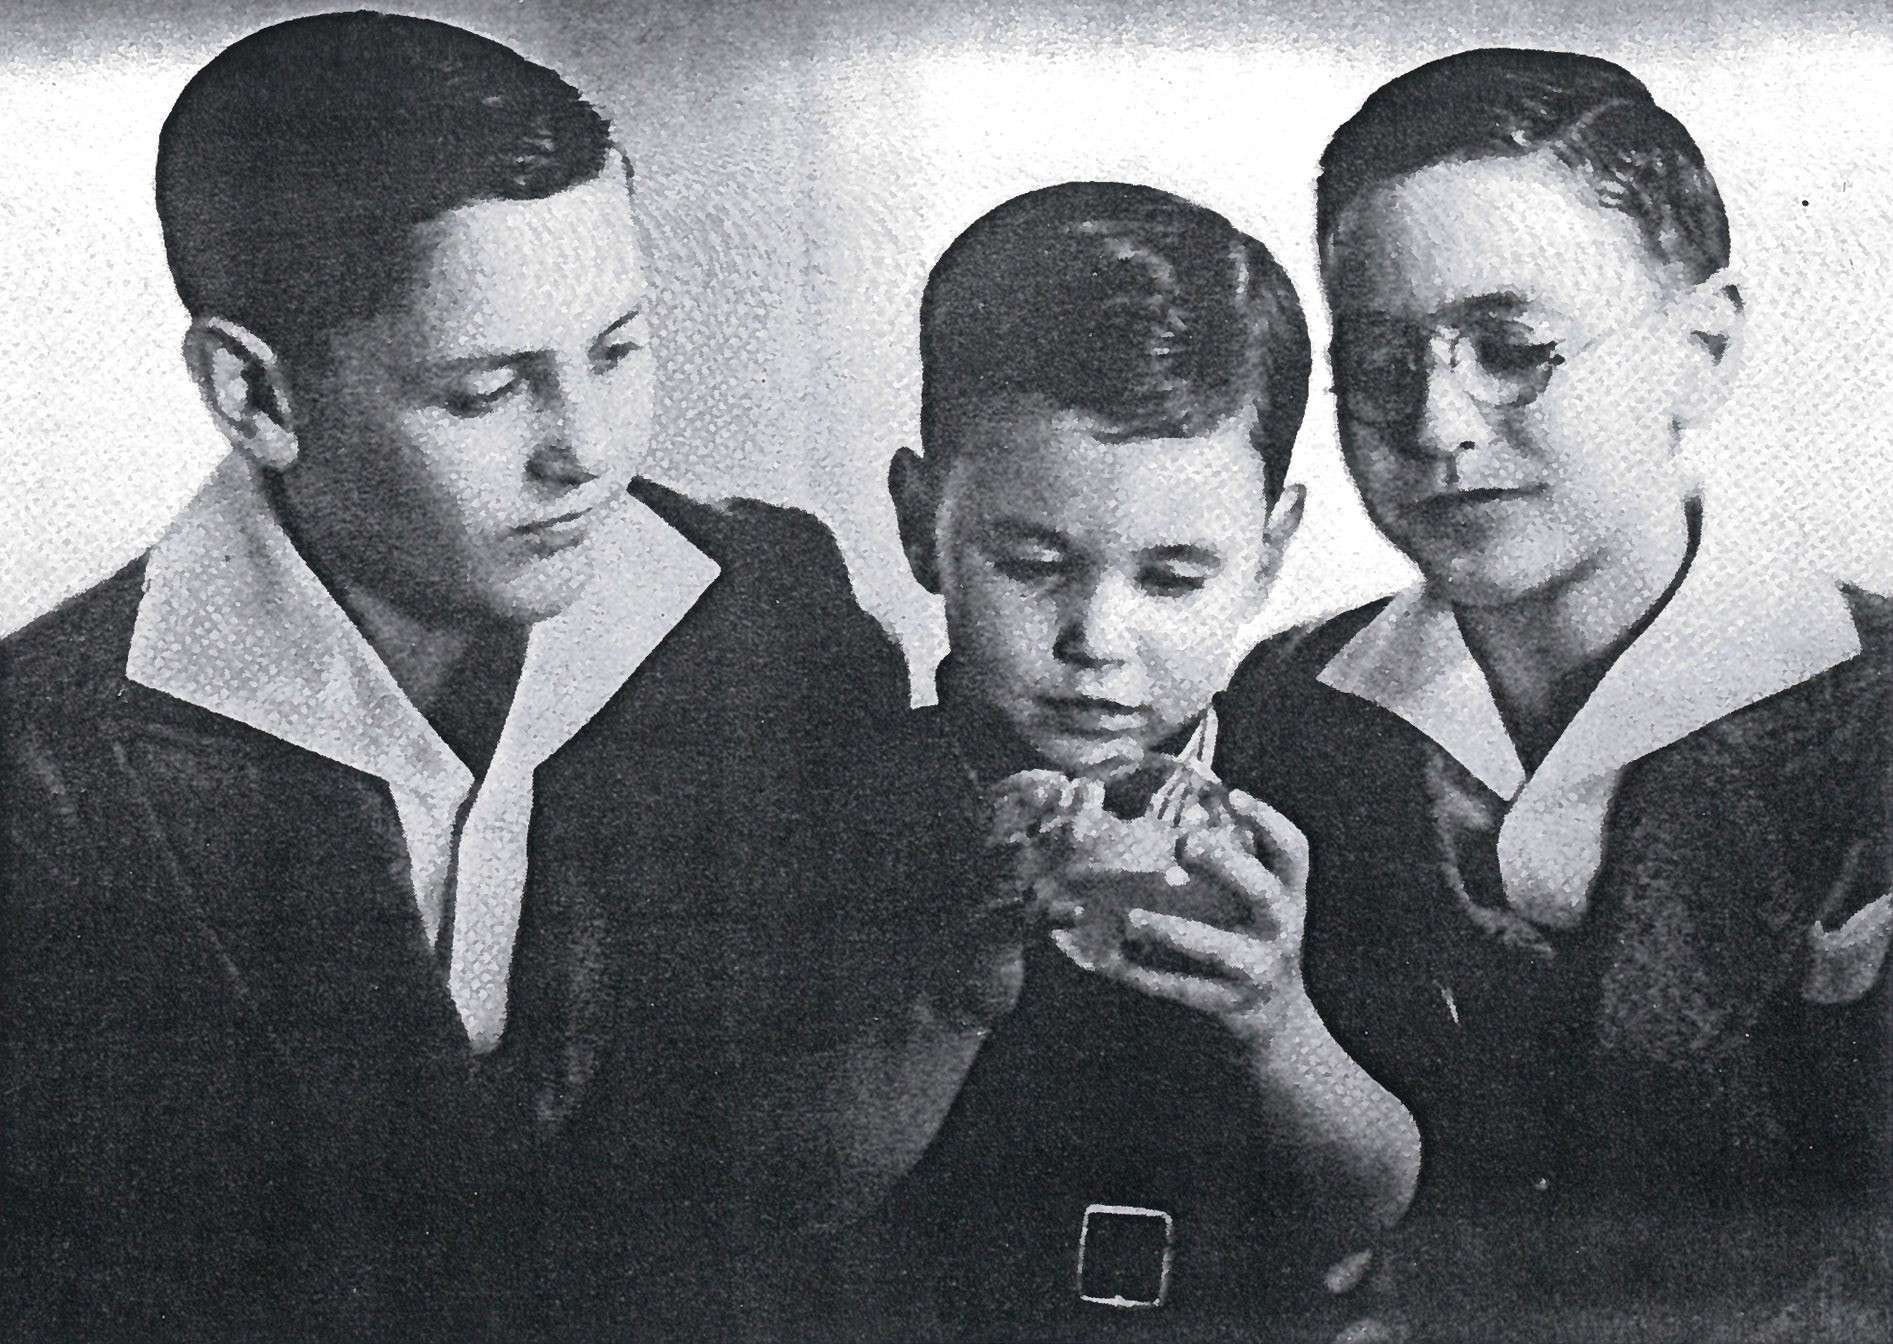 Братья Прицкер. старший брат Джей (слева), средний Роберт (справа) и младший Дональд (по центру), примерно 1937 год.